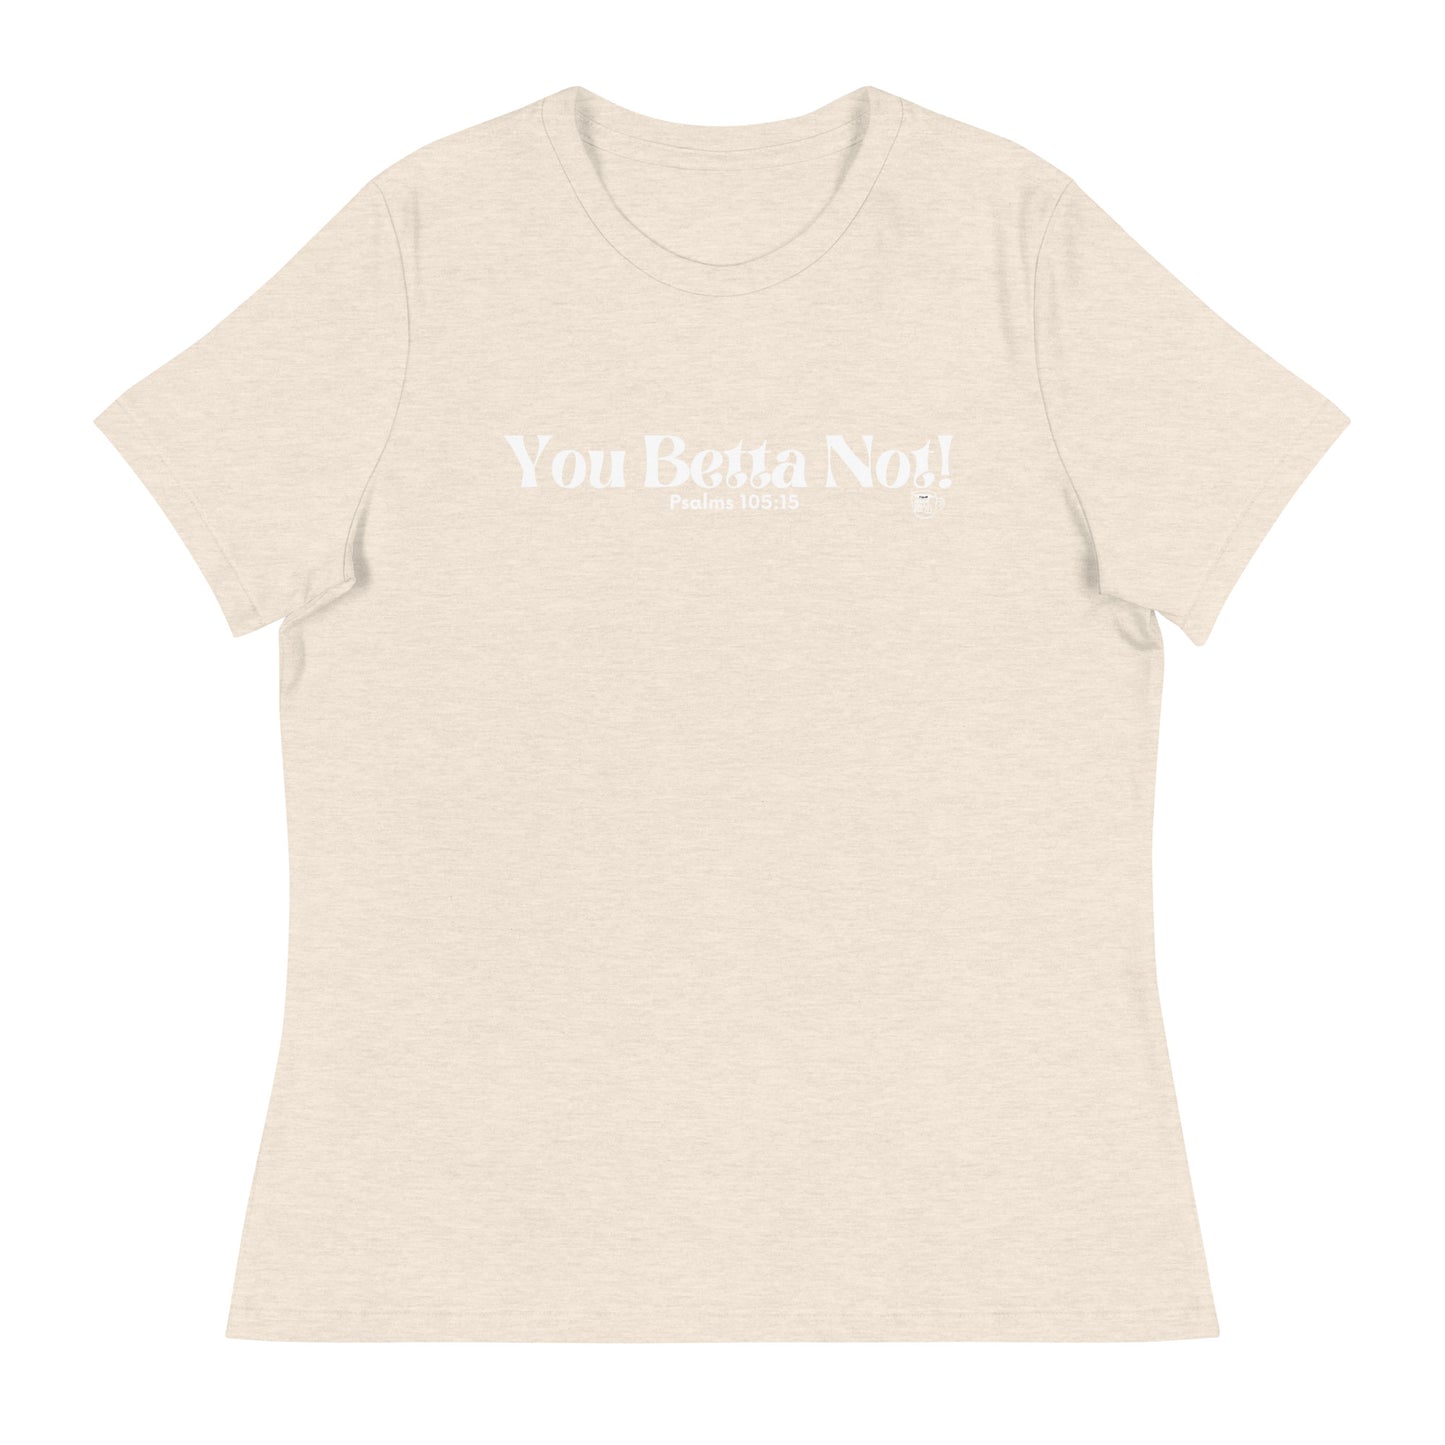 Urban Bible Tea: You Betta Not! Psalms 105:15 Women's Relaxed T-Shirt